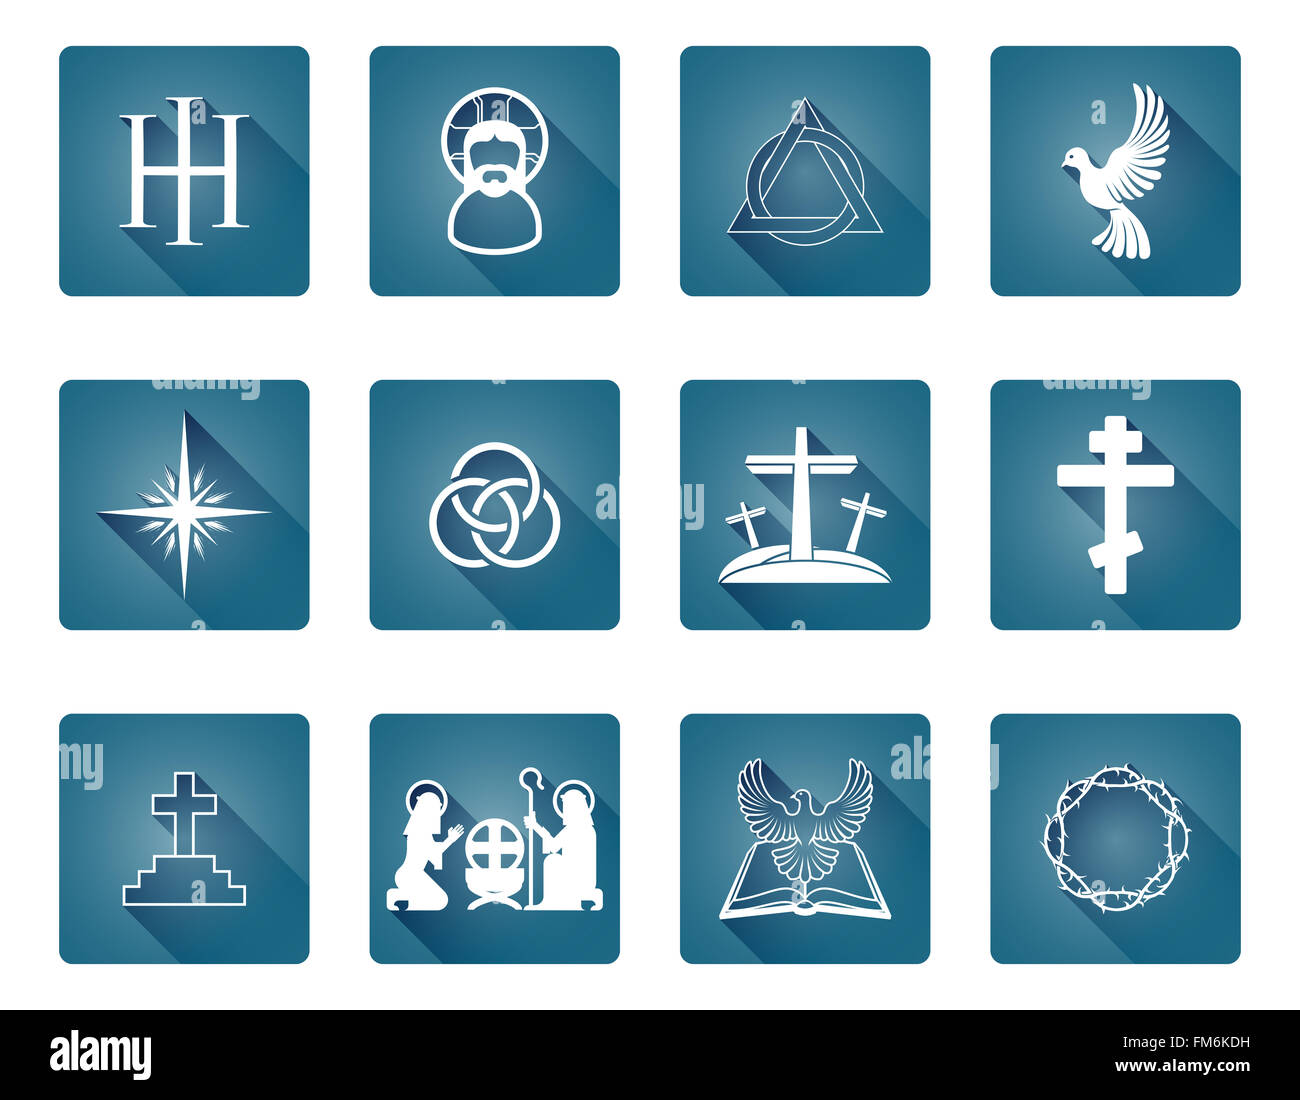 Un ensemble d'icônes et symboles religieux chrétiens y compris crèche Banque D'Images